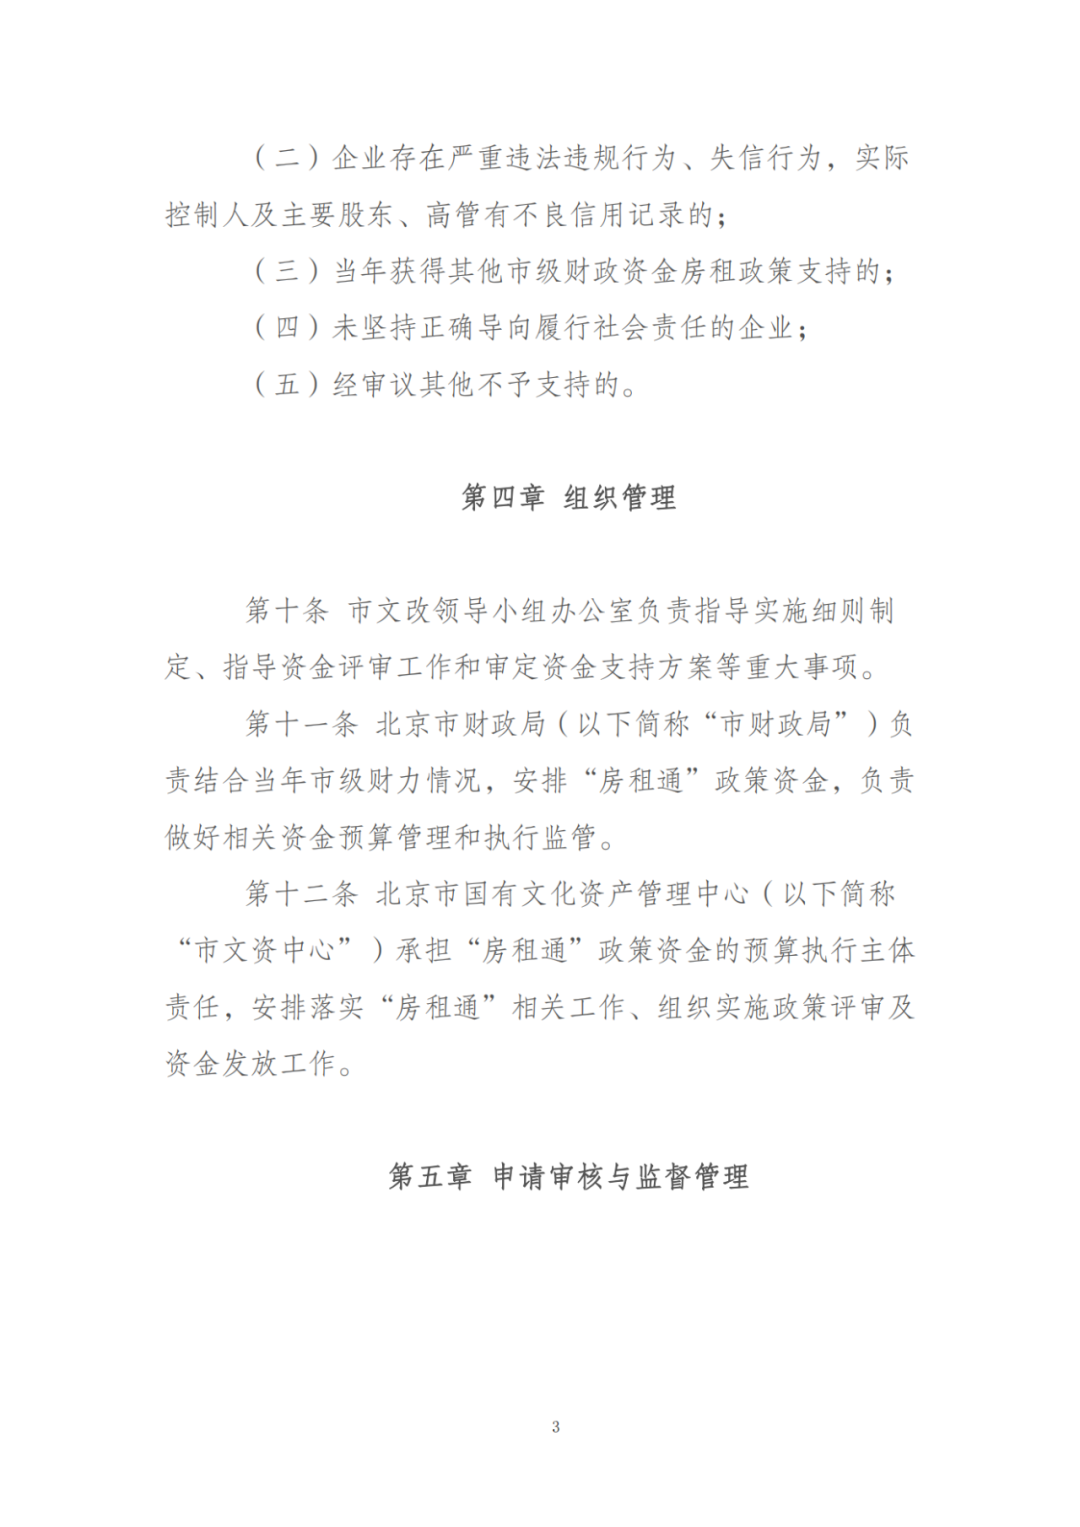 关于启动2022年北京市文化企业“房租通”项目申报工作的通知